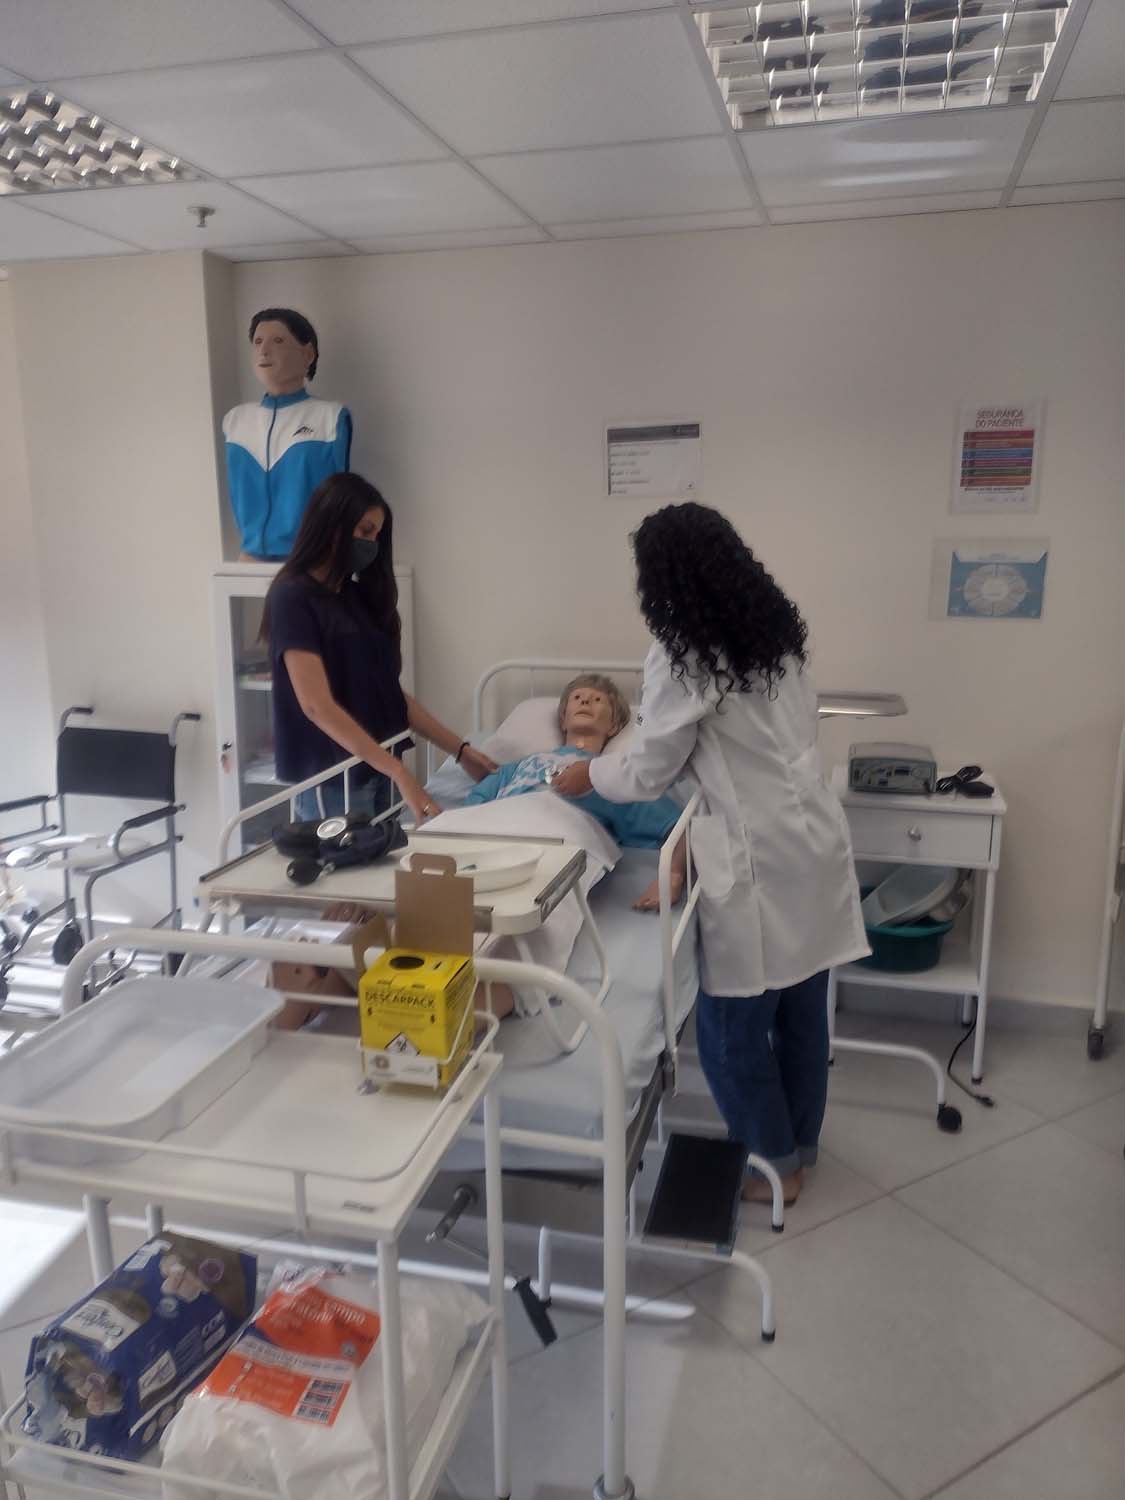 Nova unidade da Estácio em Duque de Caxias oferece sete cursos superiores na área de saúde